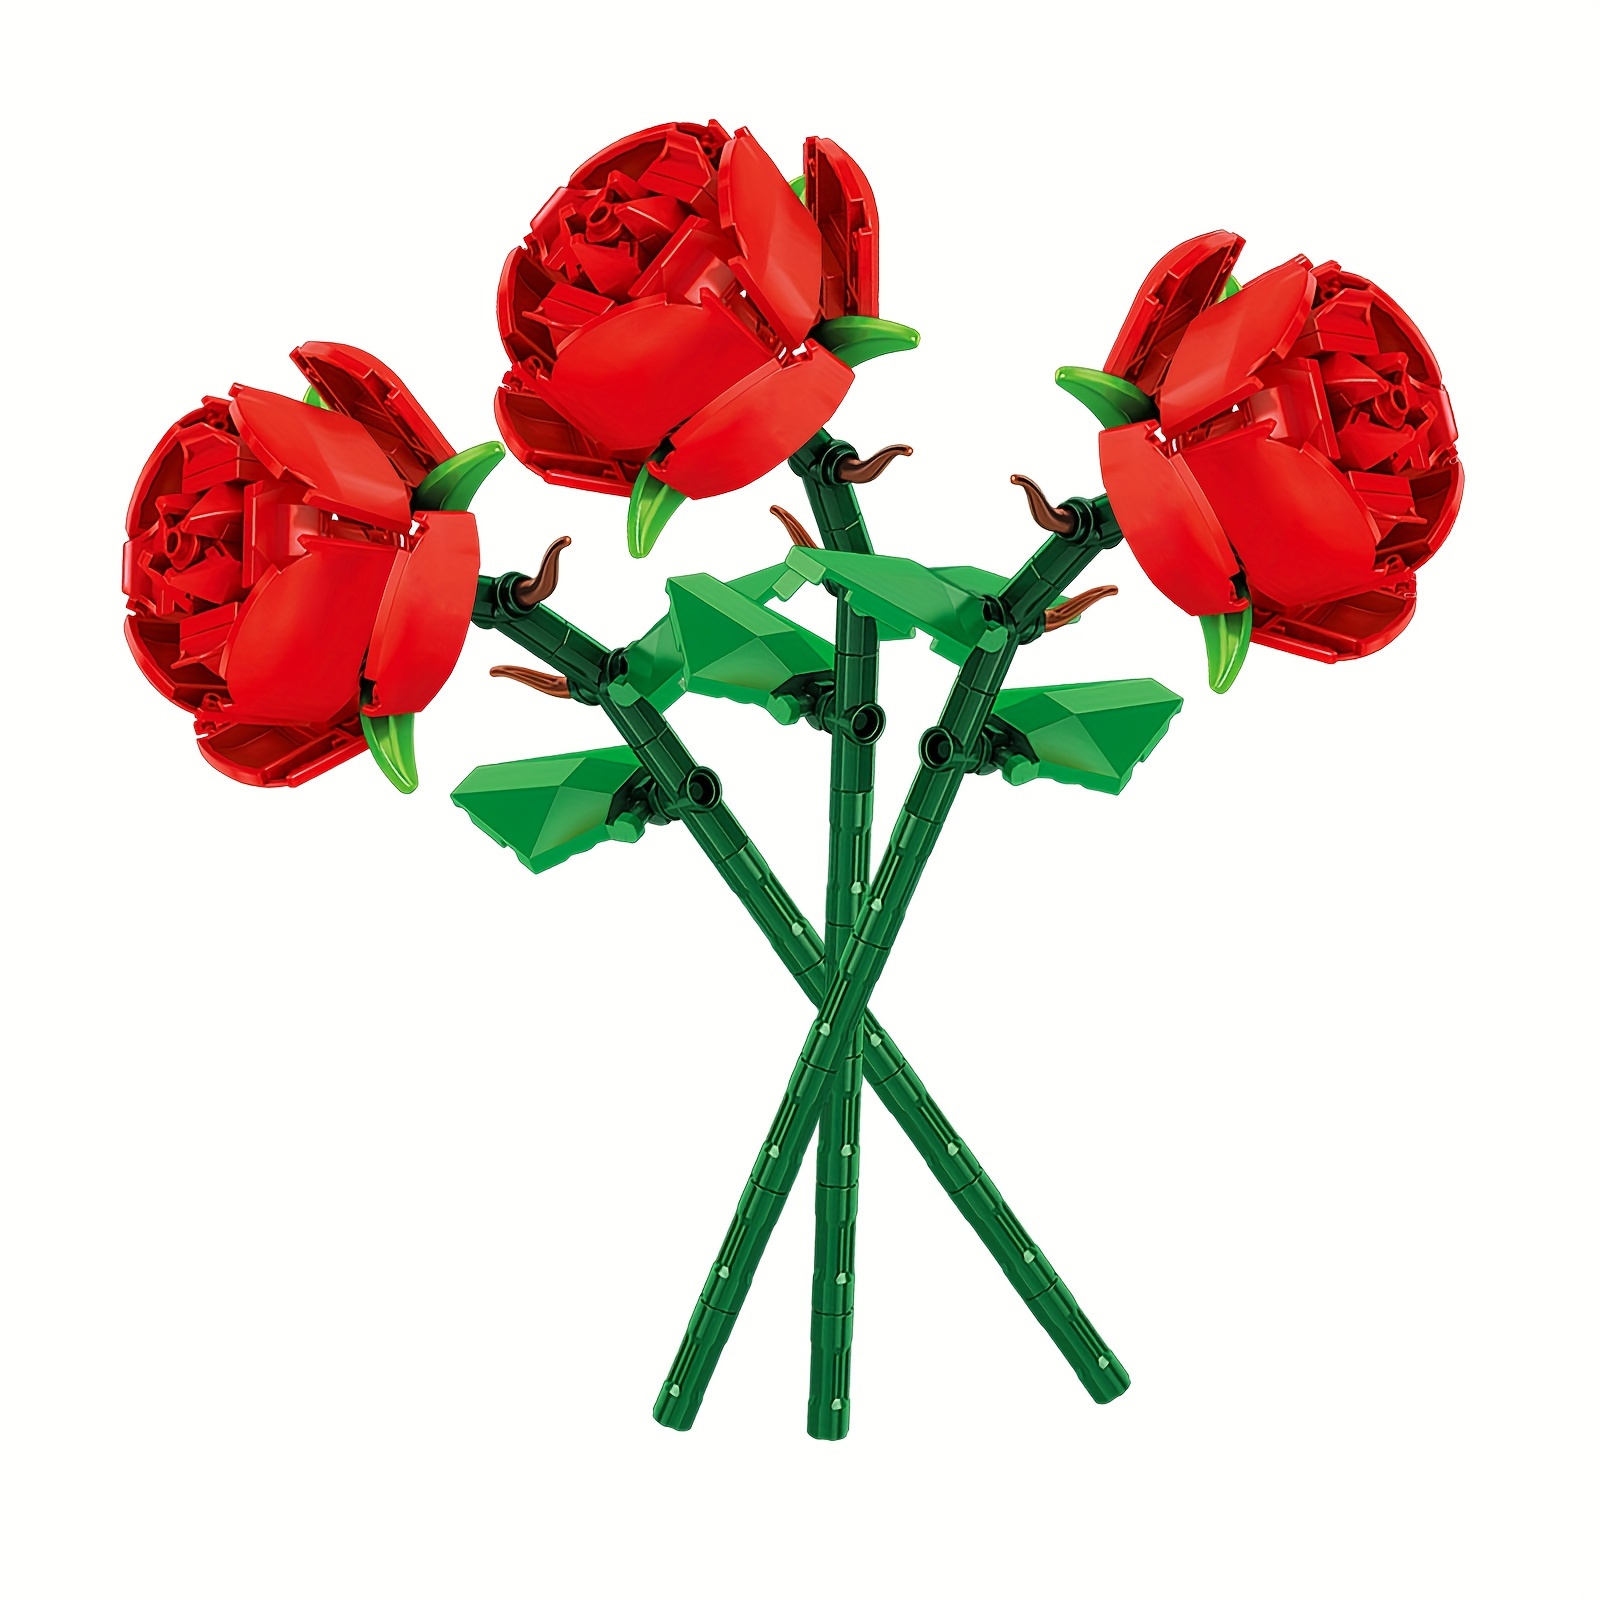  Juego de construcción de ramo de rosas con jarrón para adultos,  878 piezas de ramo de rosas bonsái compatible con Lego, juego de exhibición  de flores artificiales para decoración del hogar